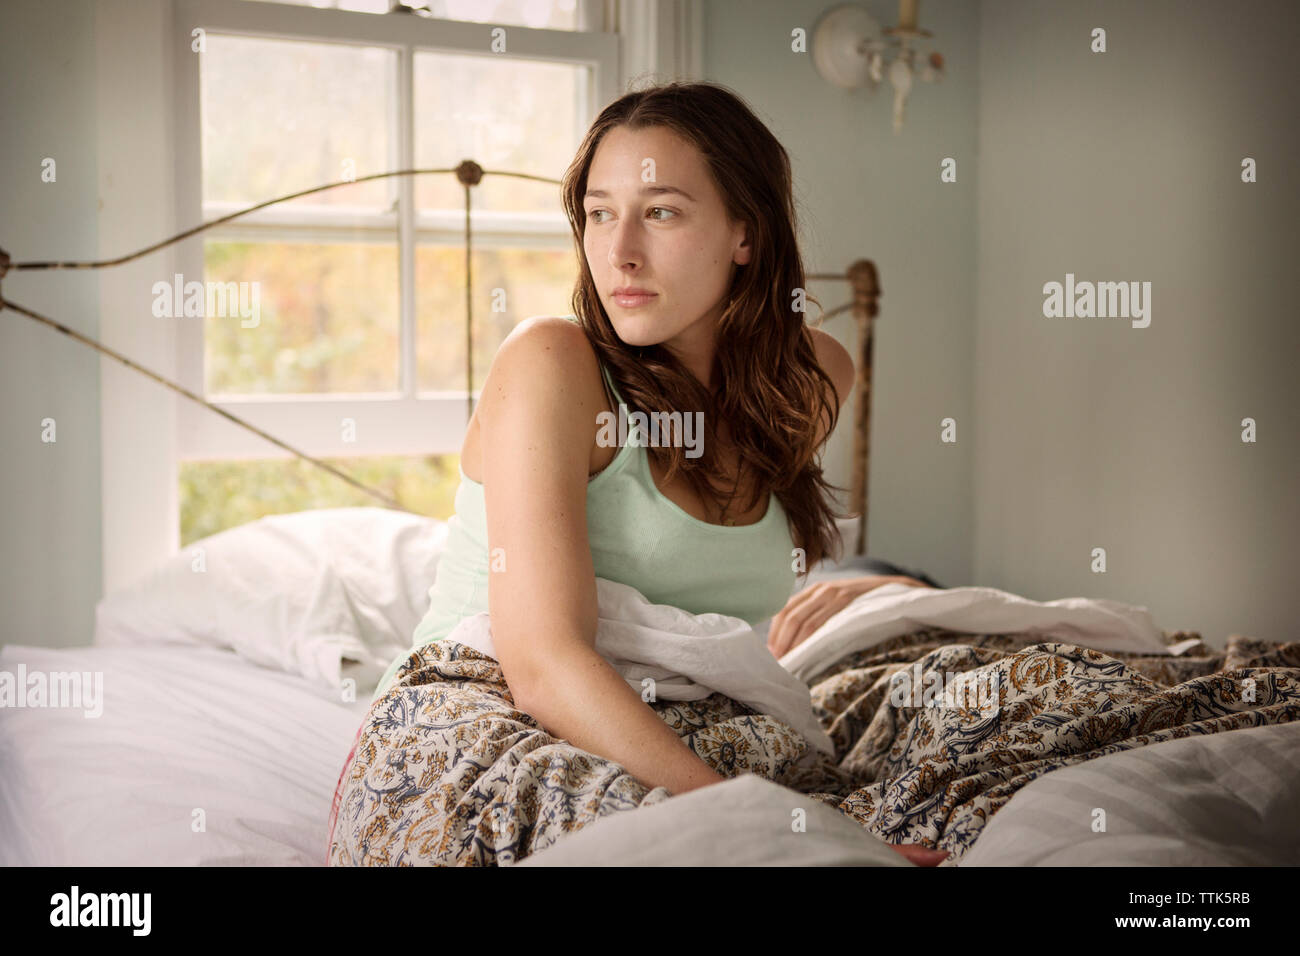 Junge Frau auf dem Bett aufwachen. Stockfoto